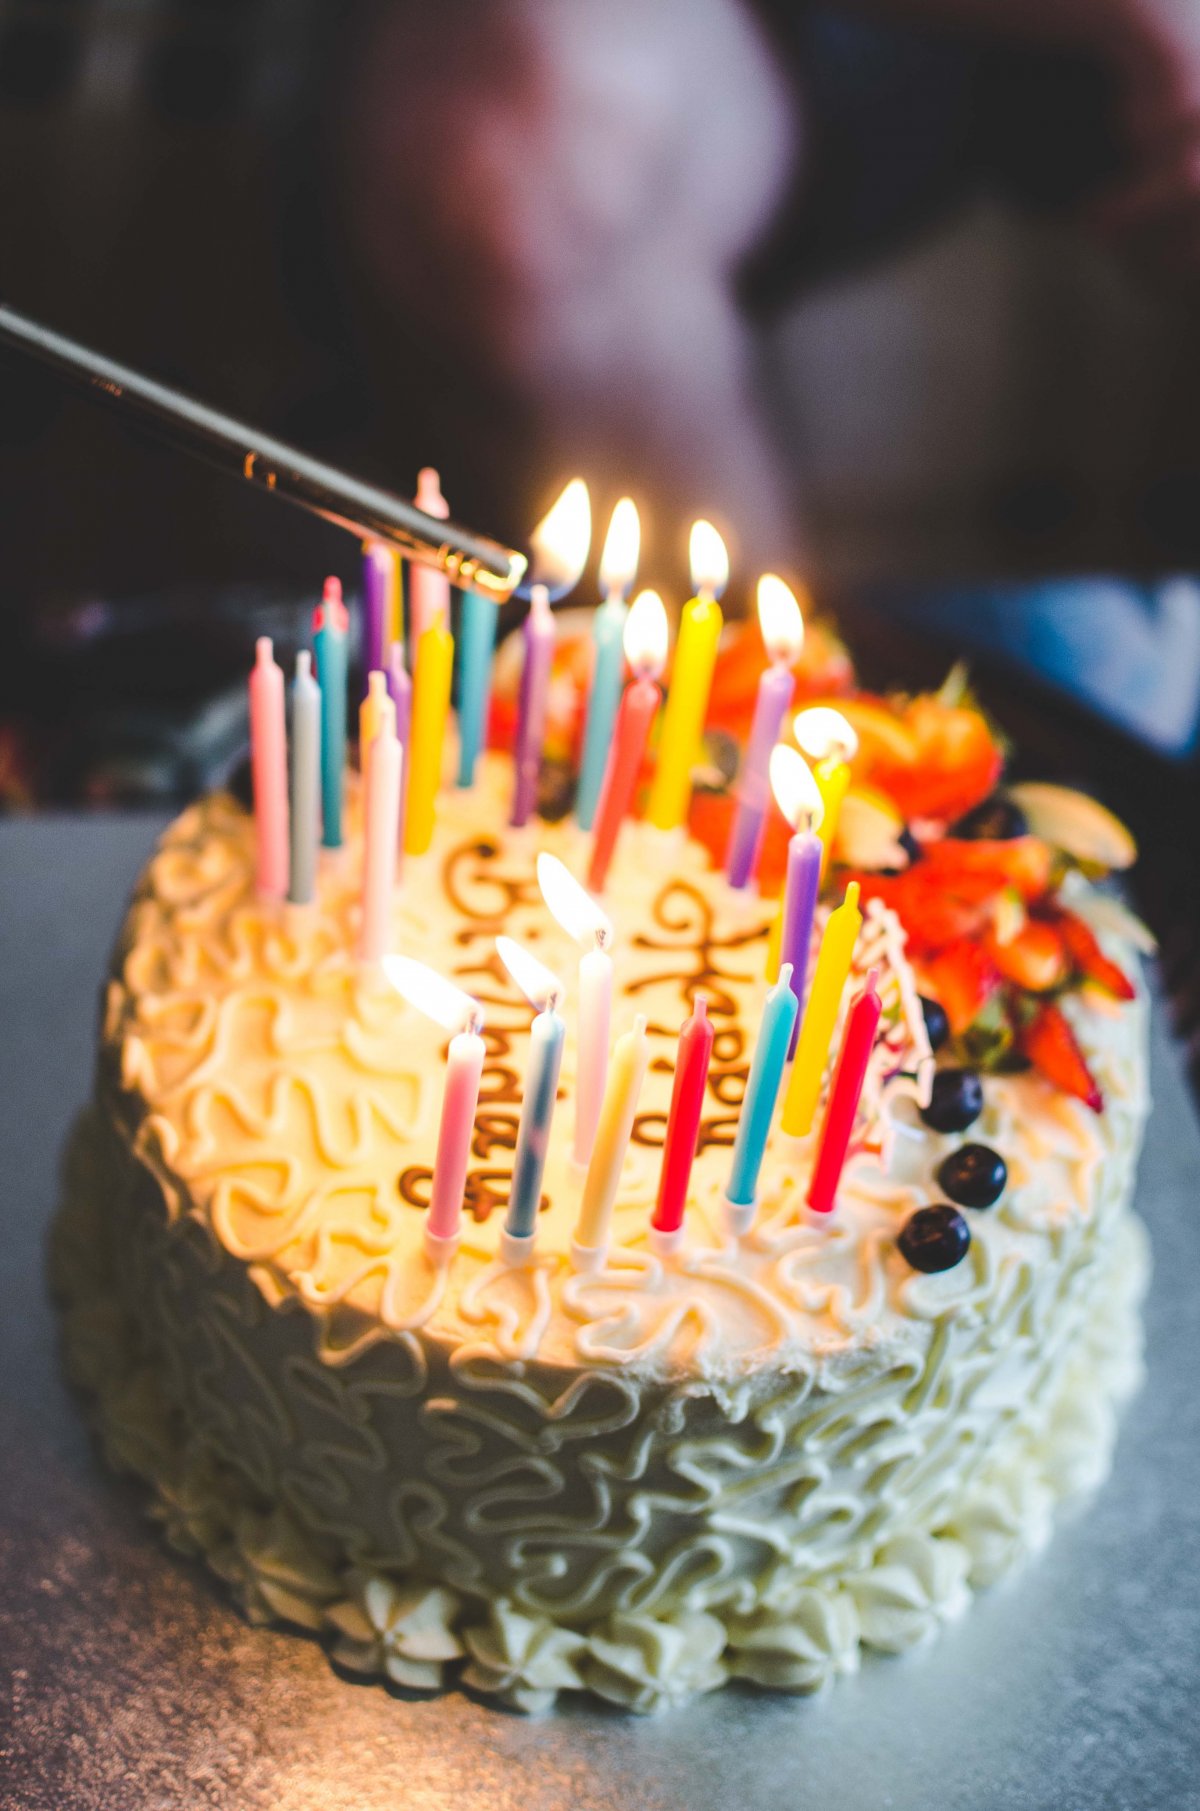 生日蛋糕真实蜡烛图片